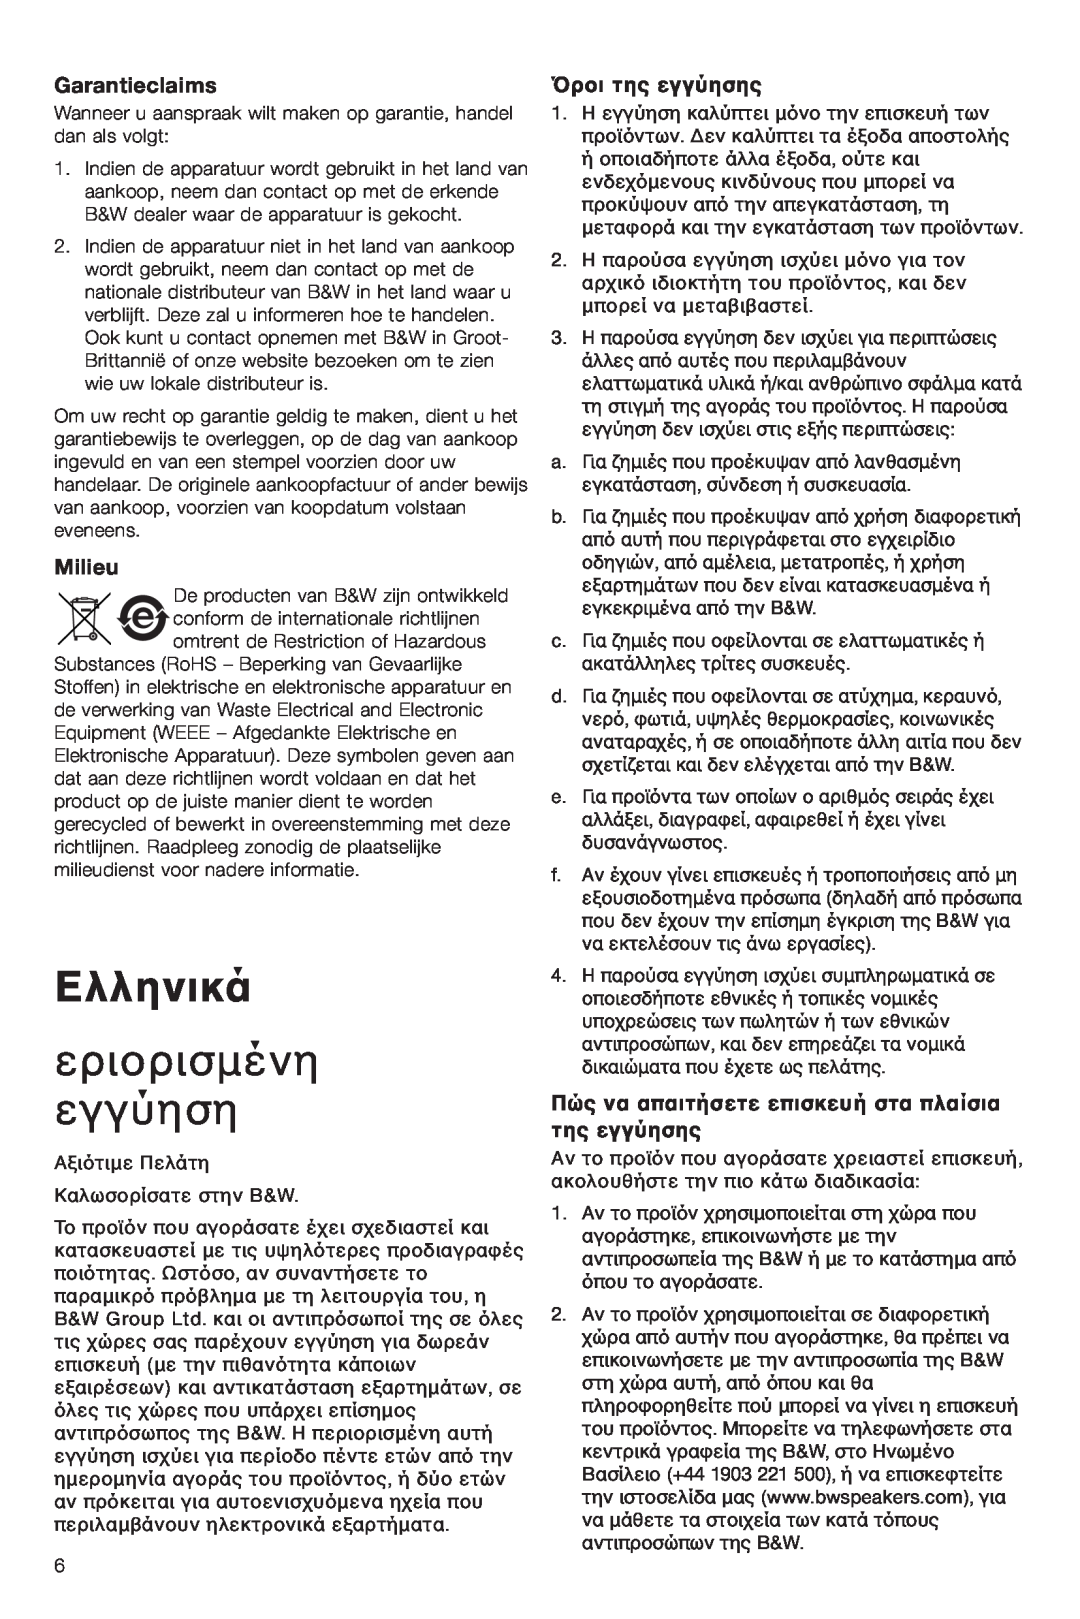 Bowers & Wilkins VM6 manual Ελληνικά, εριÔρισµένη εγγύηση, Garantieclaims, Milieu, ŸρÔι τη˜ εγγύηση˜ 